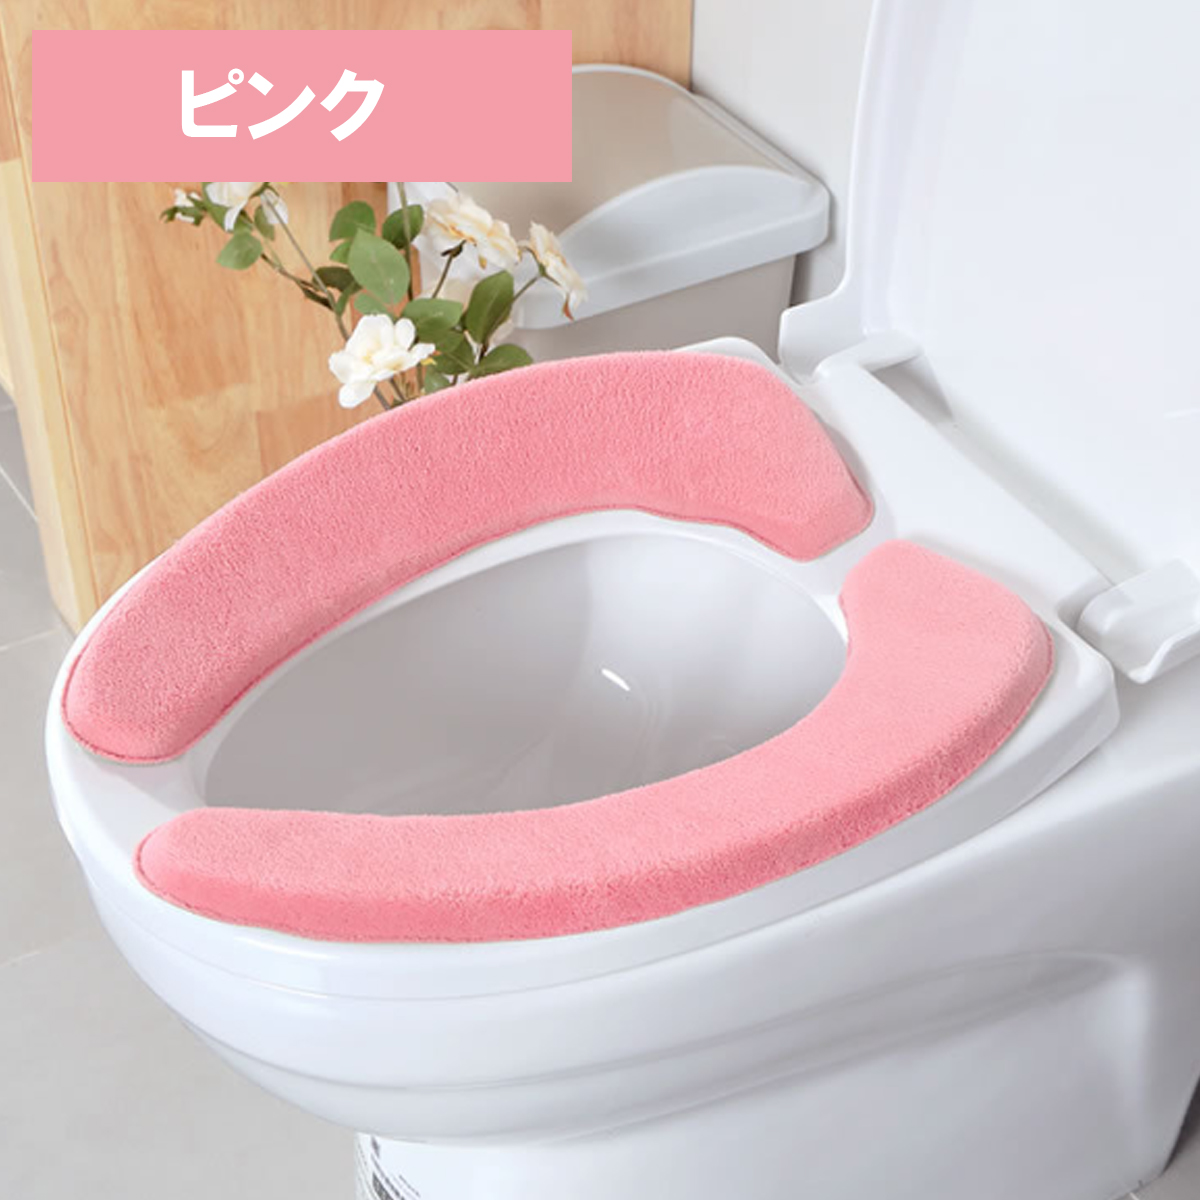 秀逸 便座カバー ピンク 桃 シンプル トイレ カバー 簡単装着 ふわふわ生地